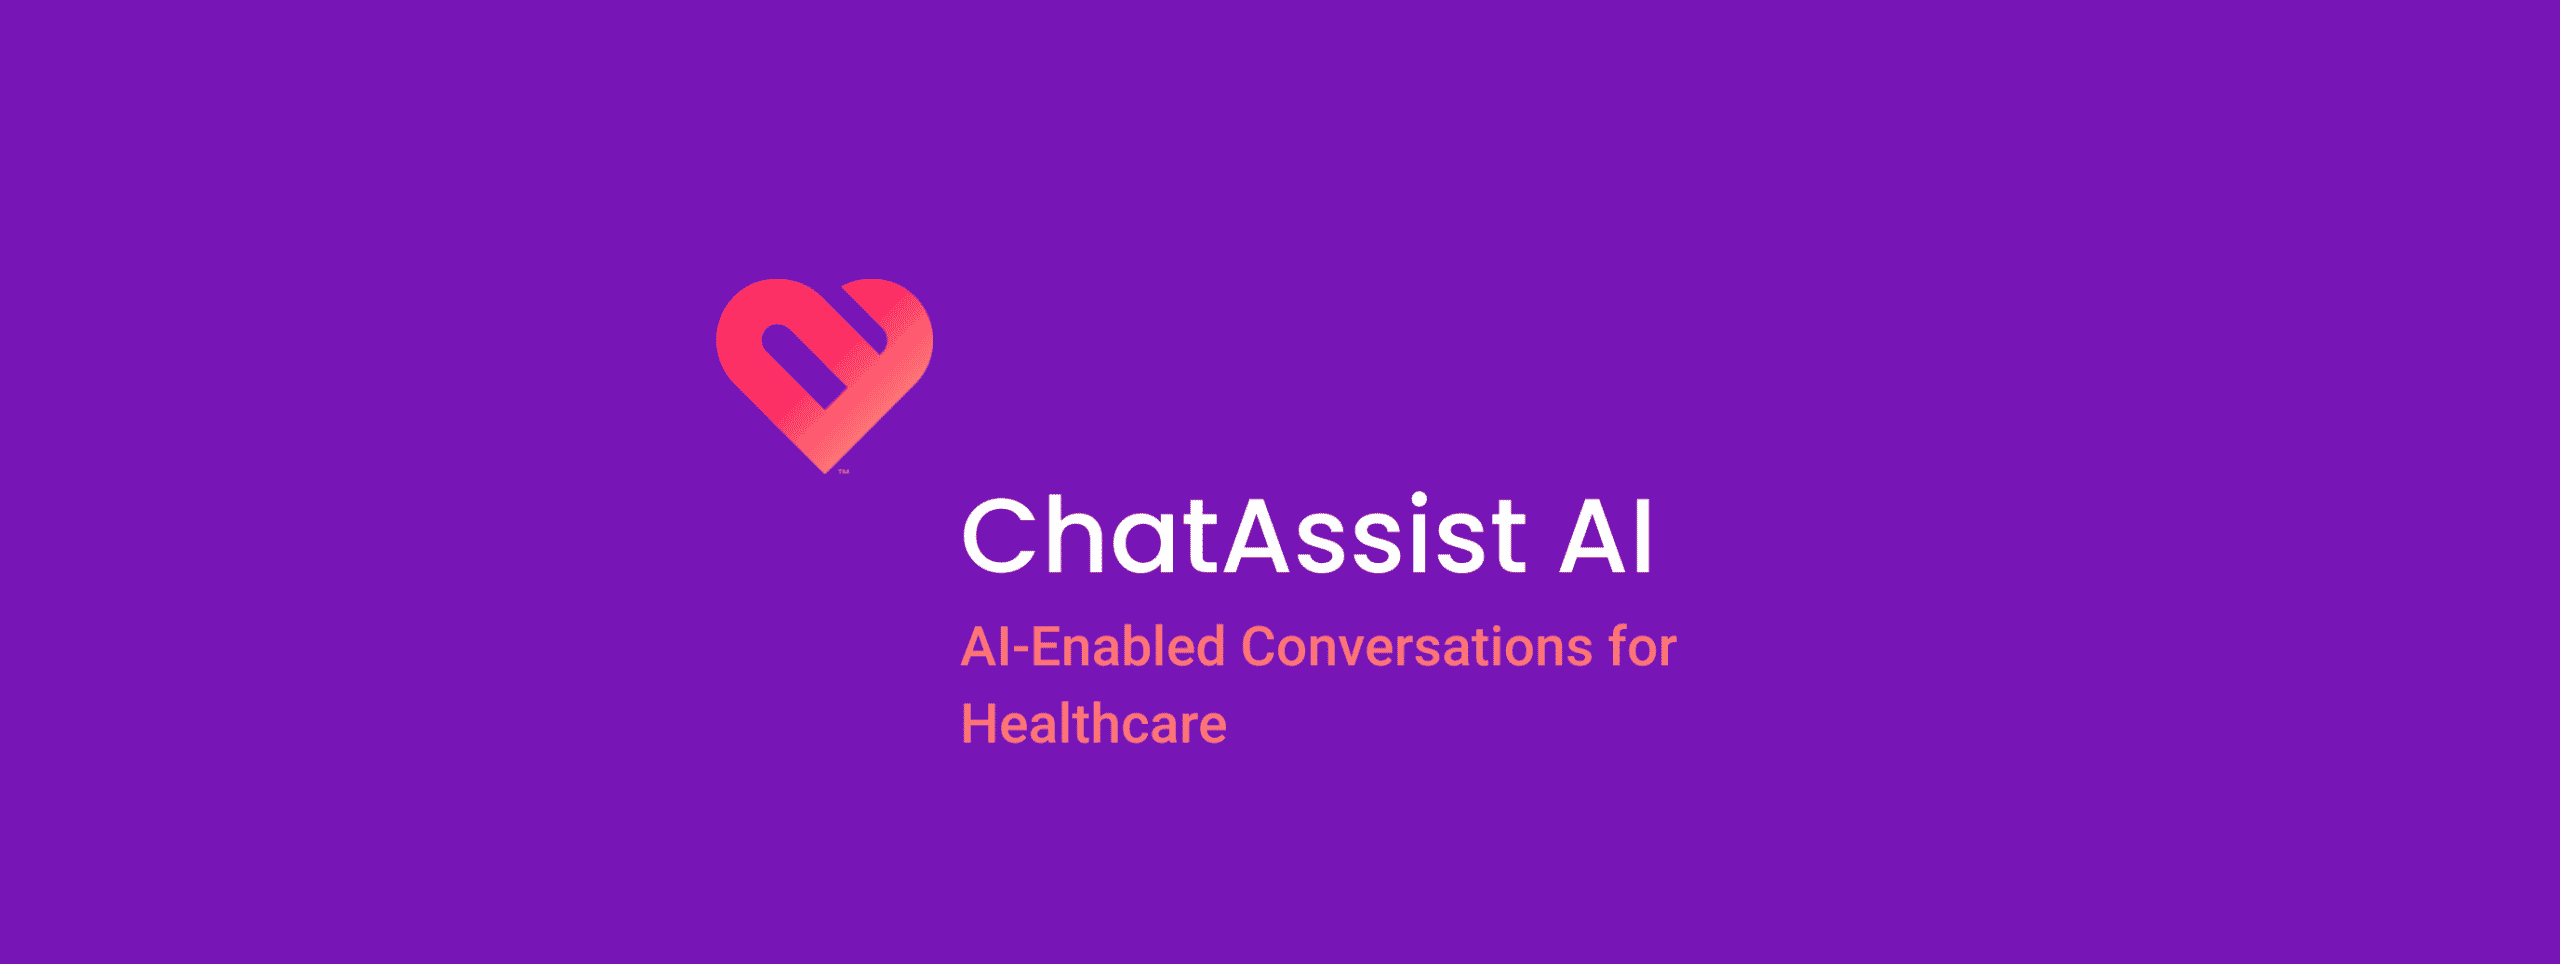 ChatAssist AI header